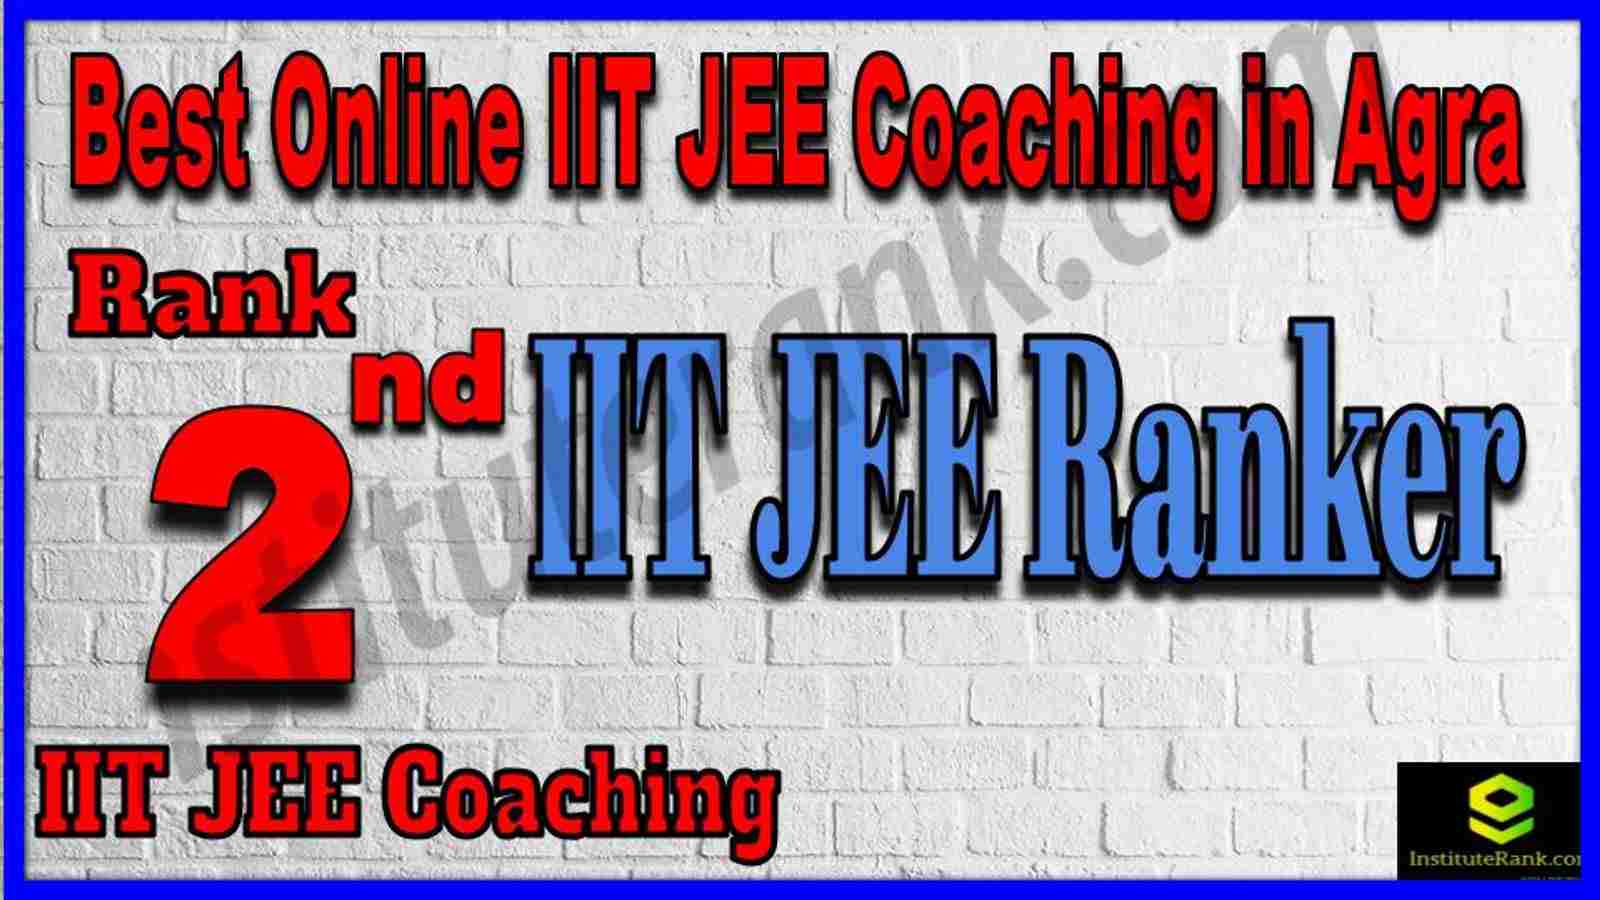 Rank 2nd Best Online IIT JEE Coaching in Agra